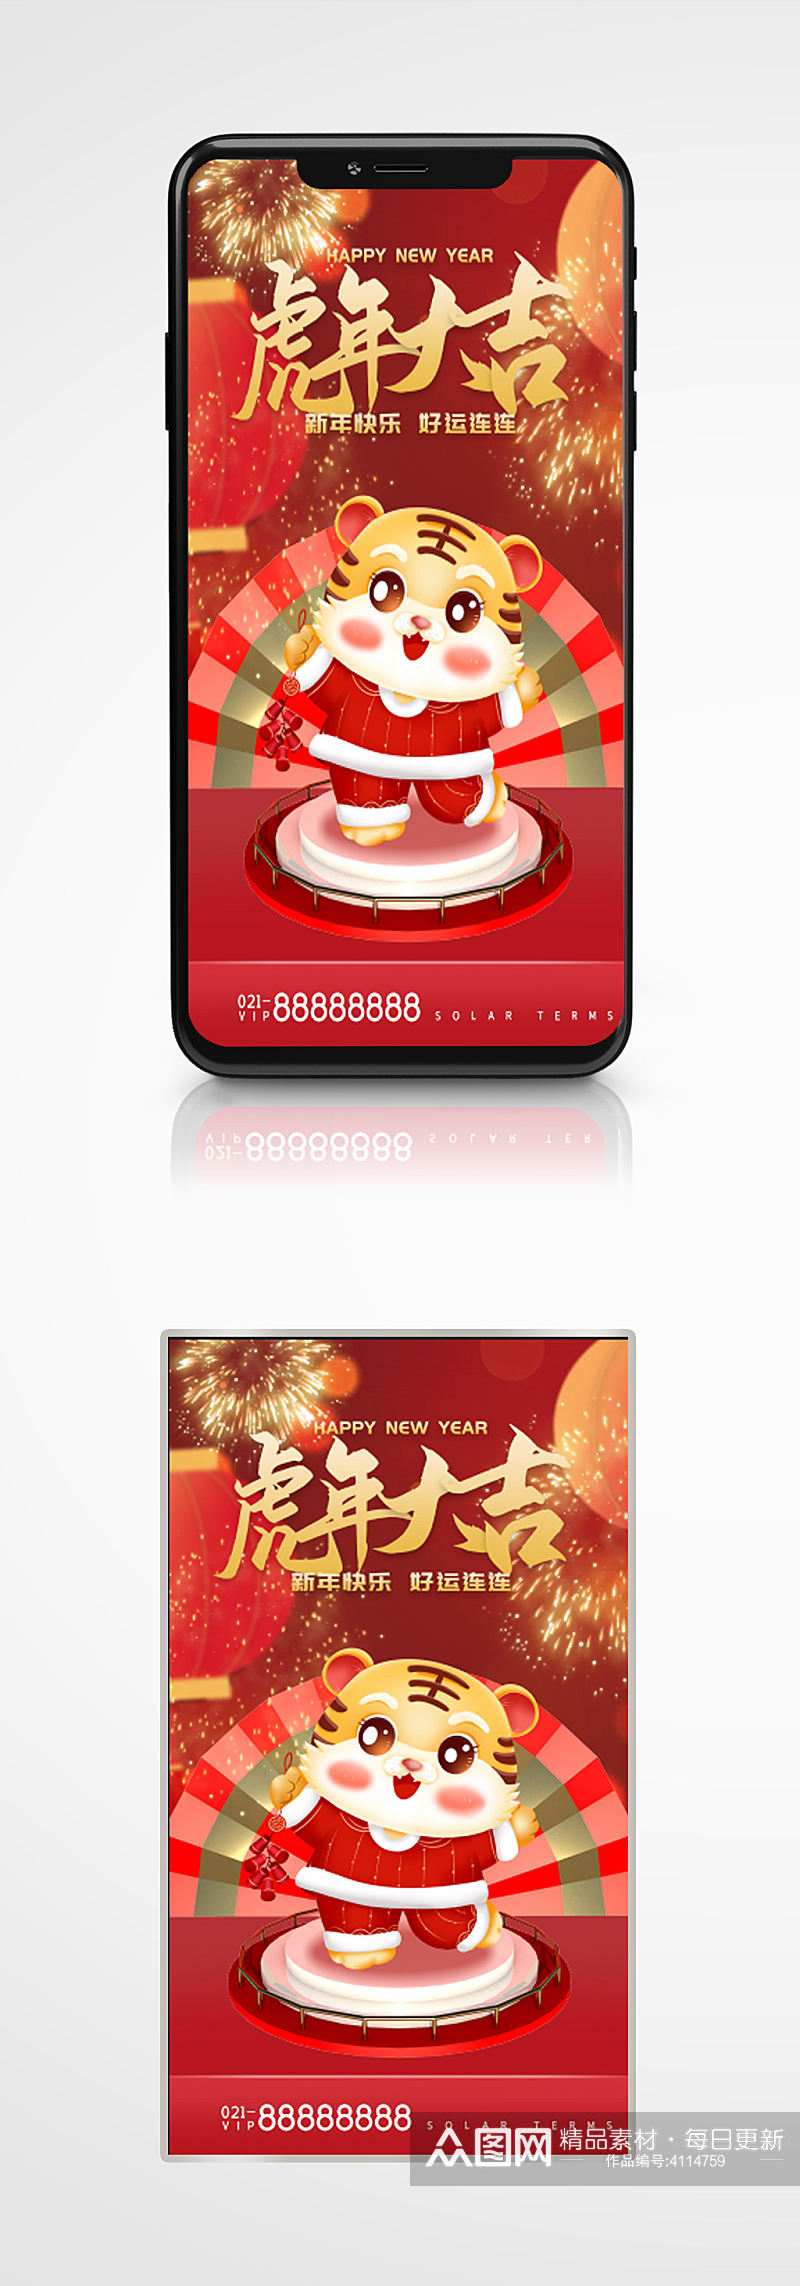 虎年快乐祝福手机gif海报红色新年素材